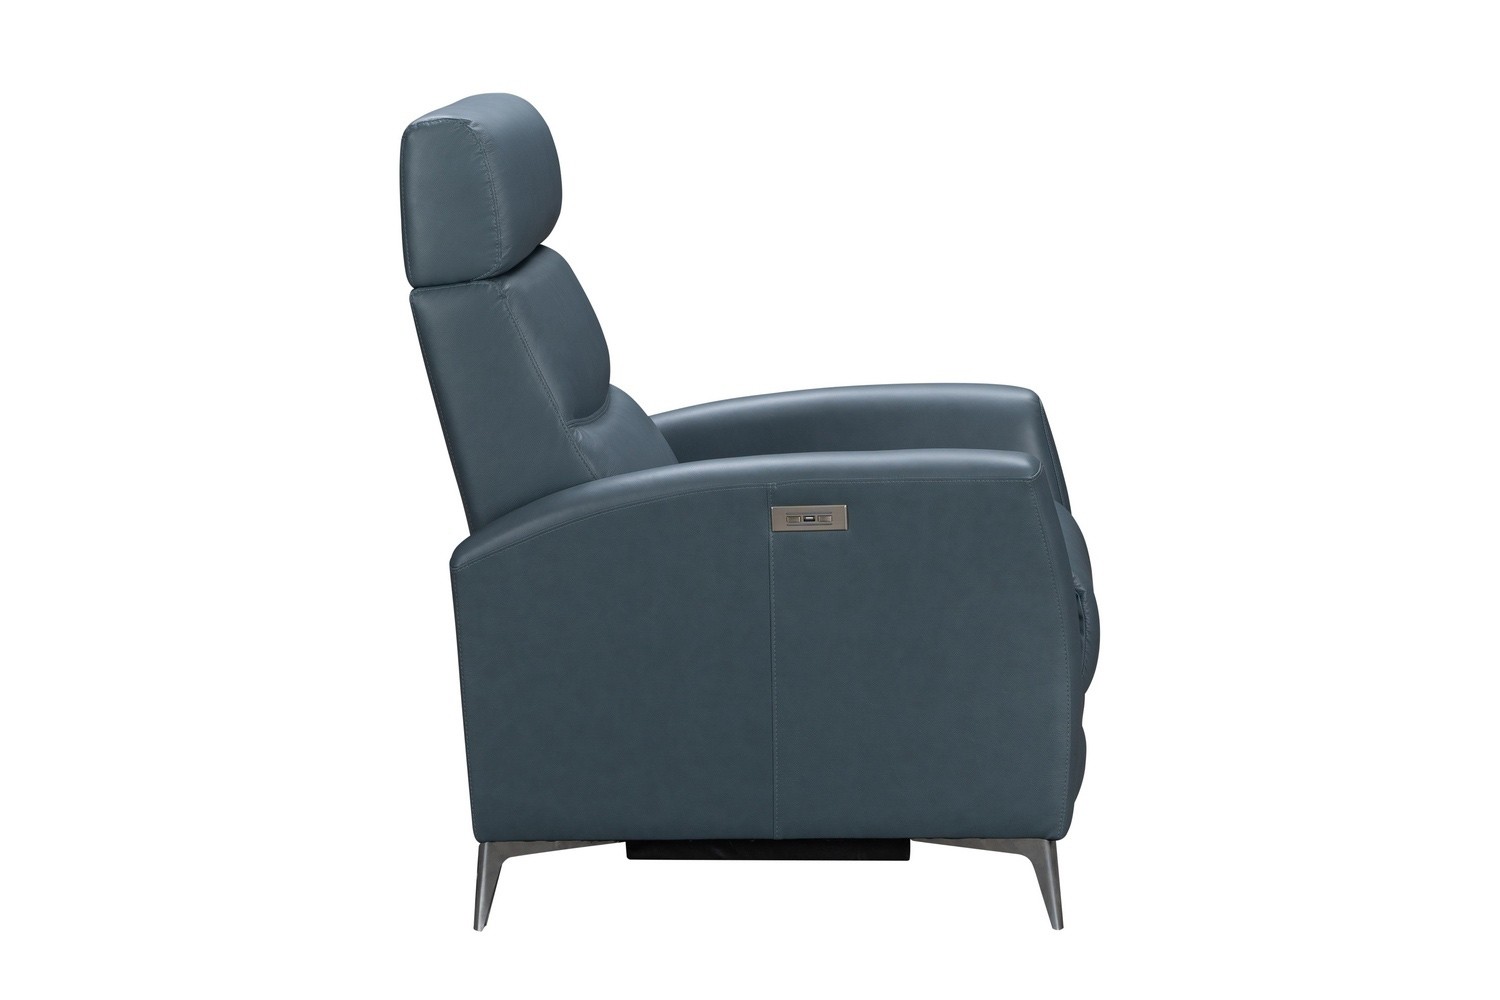 Barcalounger Zane Power Recliner Chair - Masen Bluegray/Leather Match